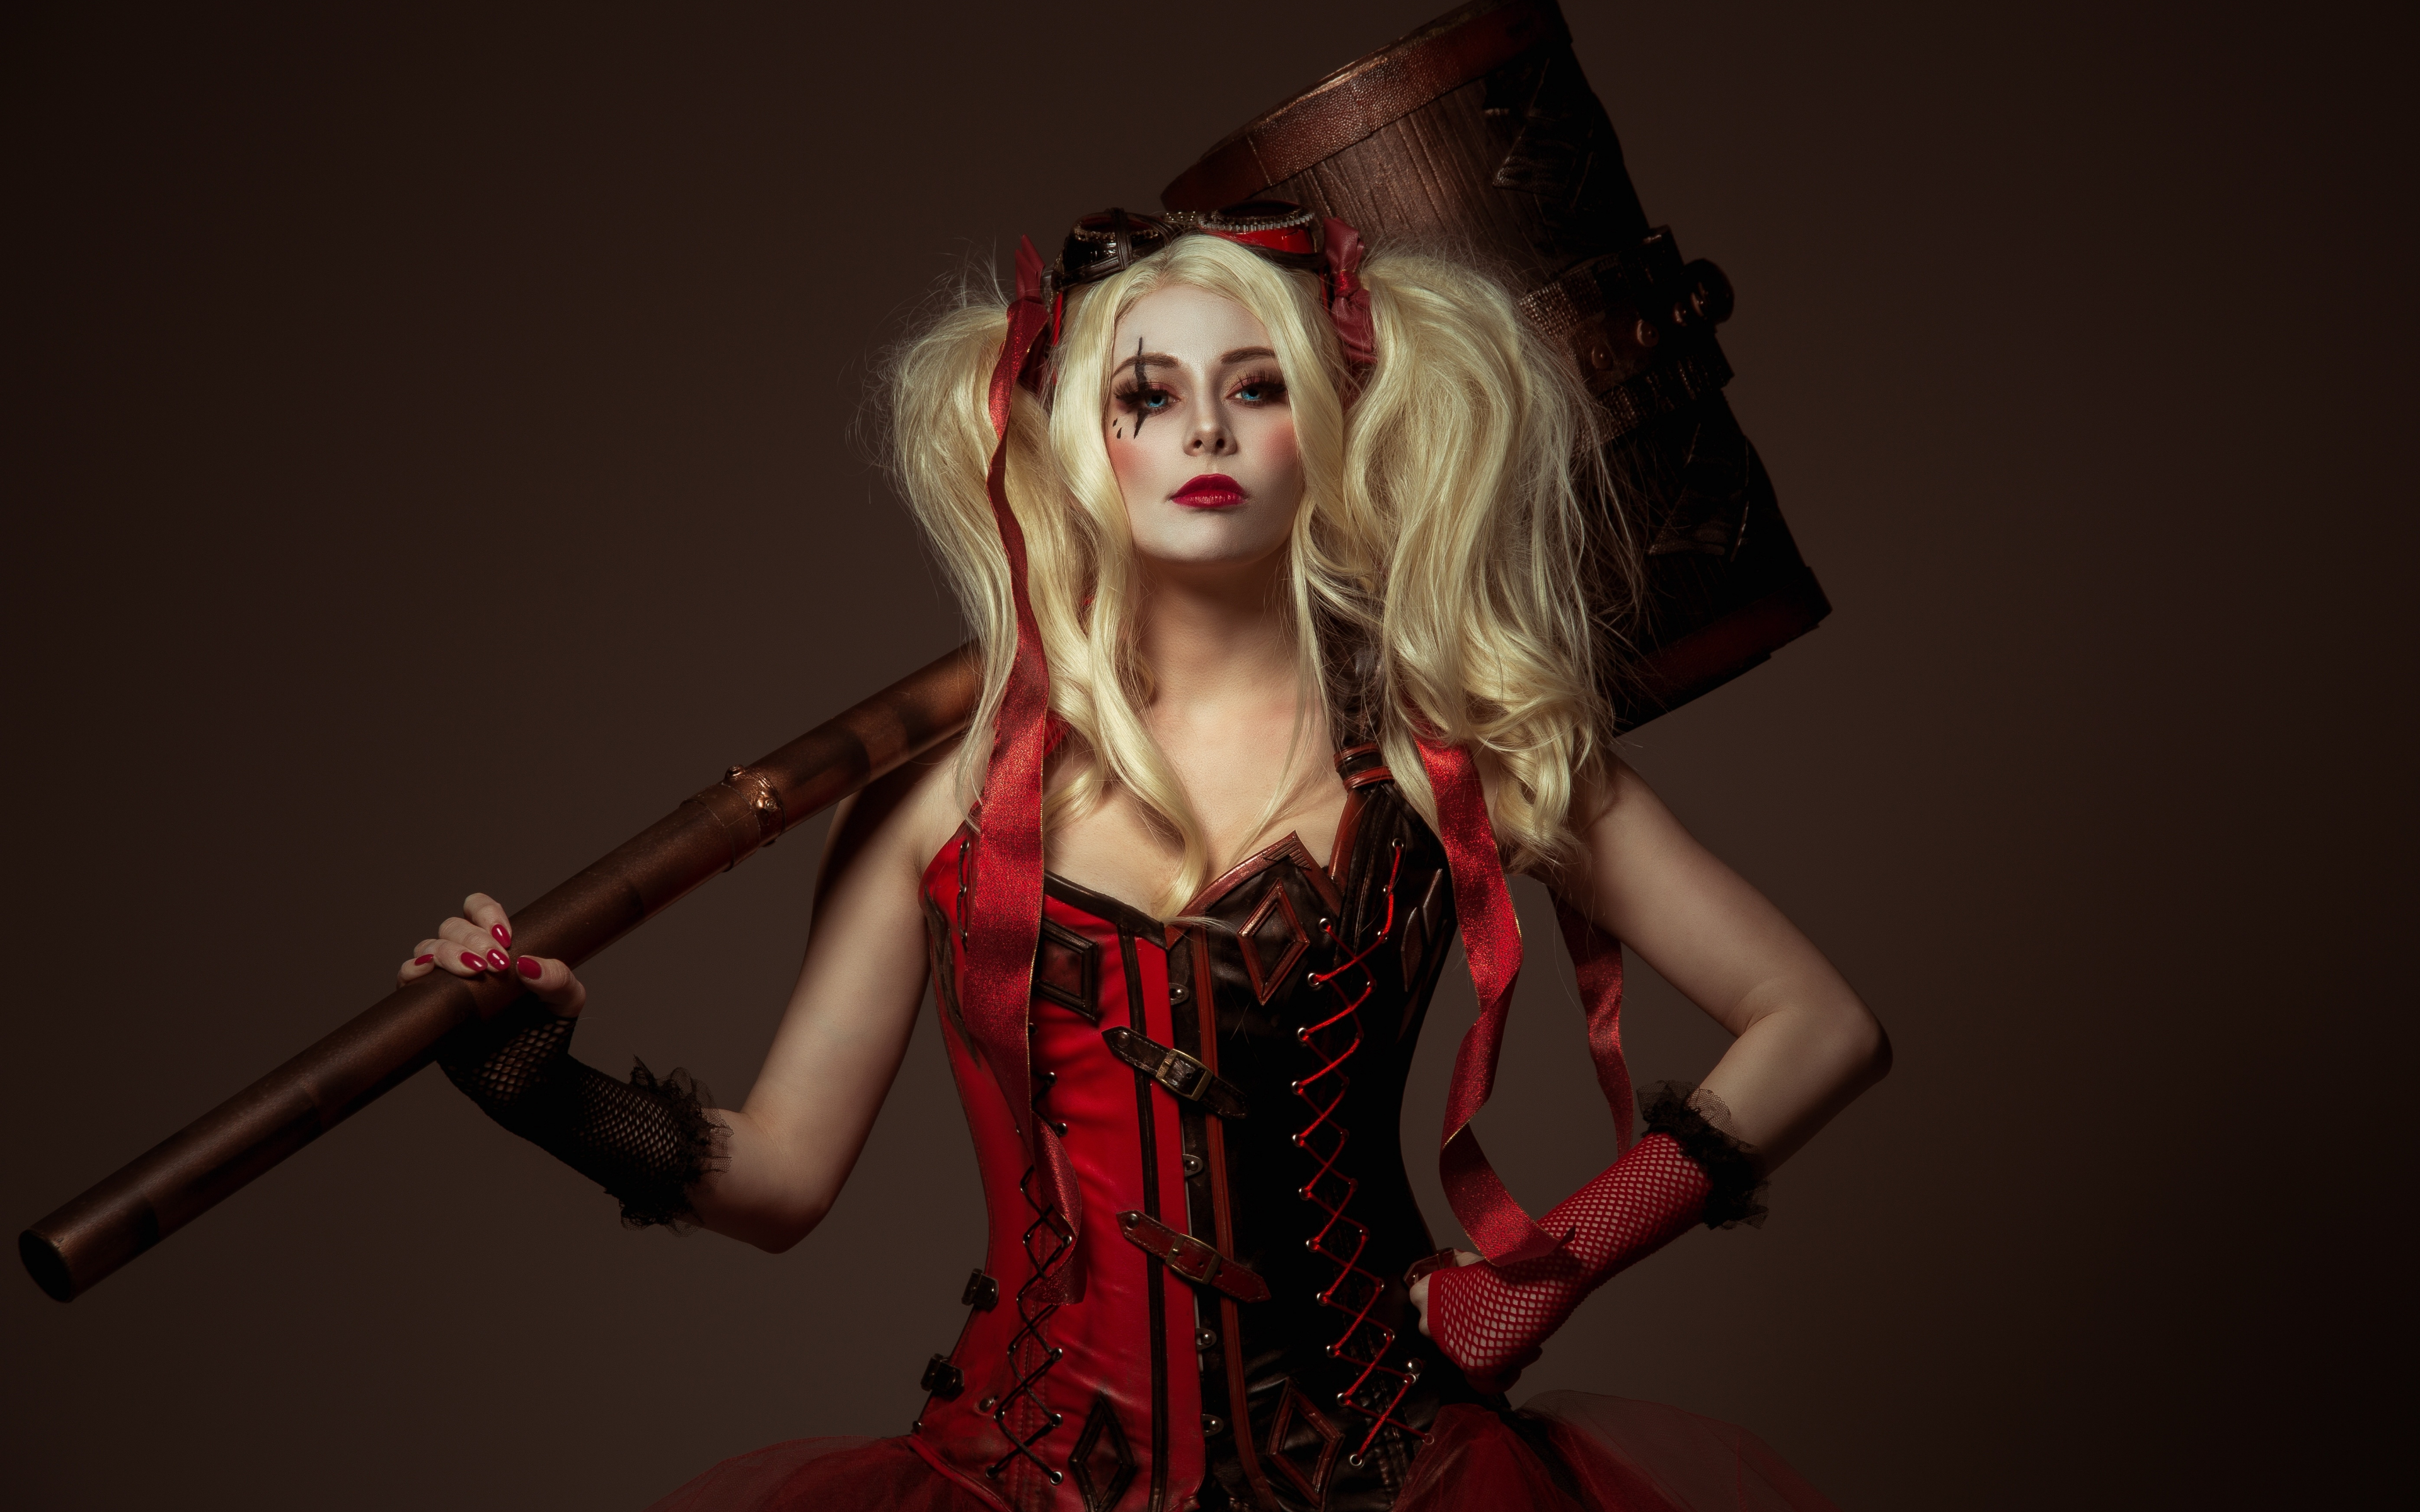 cosplay girl wallpaper,rojo,personaje de ficción,supervillano,harley quinn,disfraz